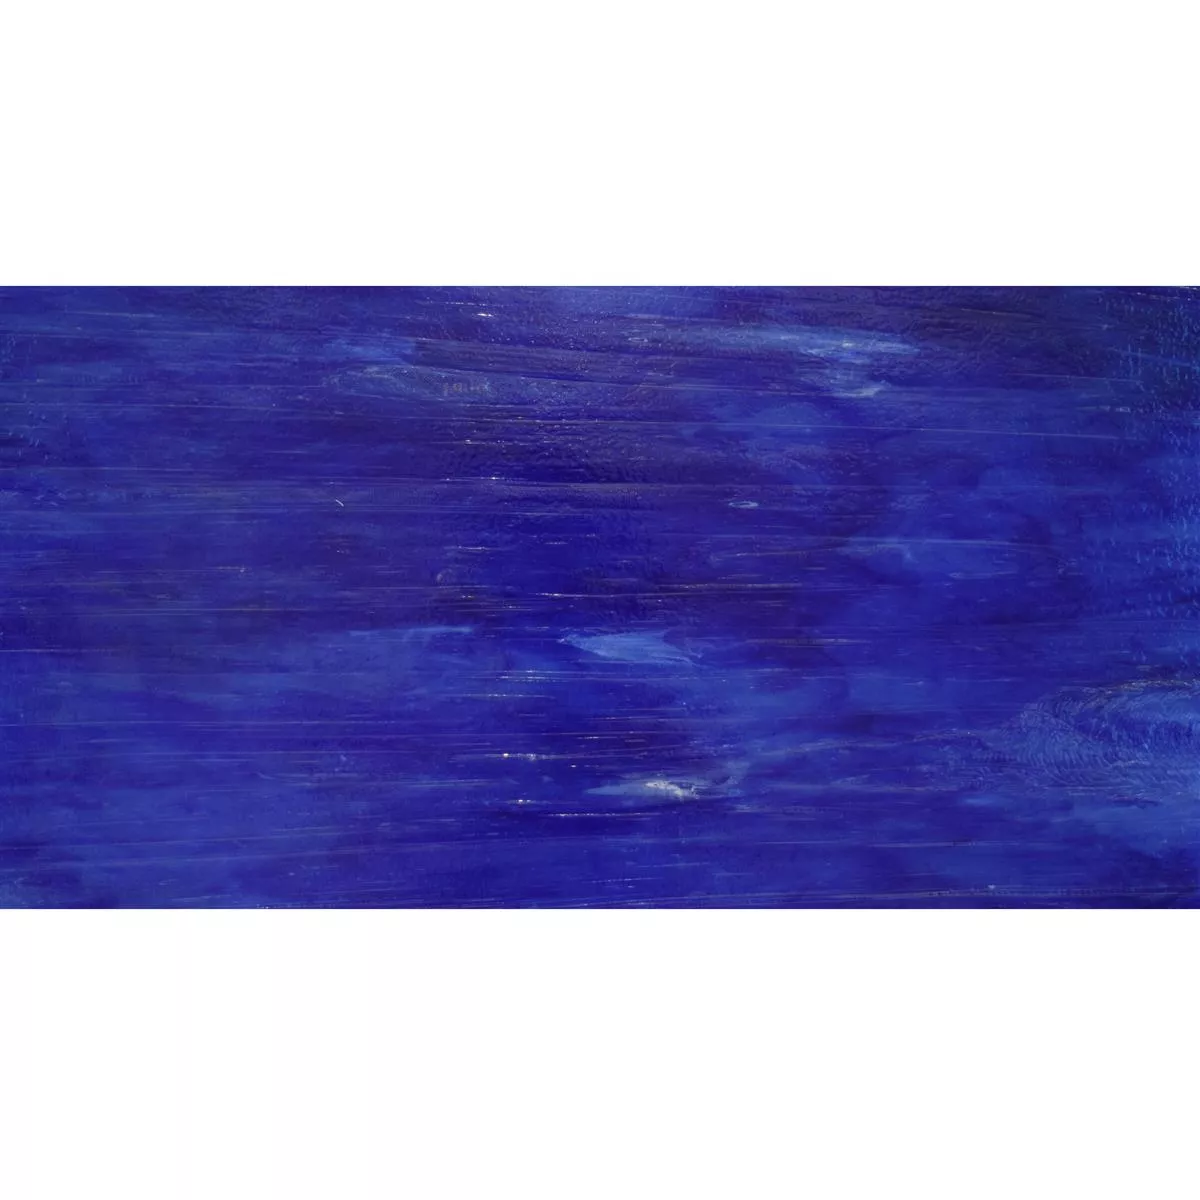 Staklo Zidne Pločice Trend-Vi Supreme Pacific Blue 30x60cm